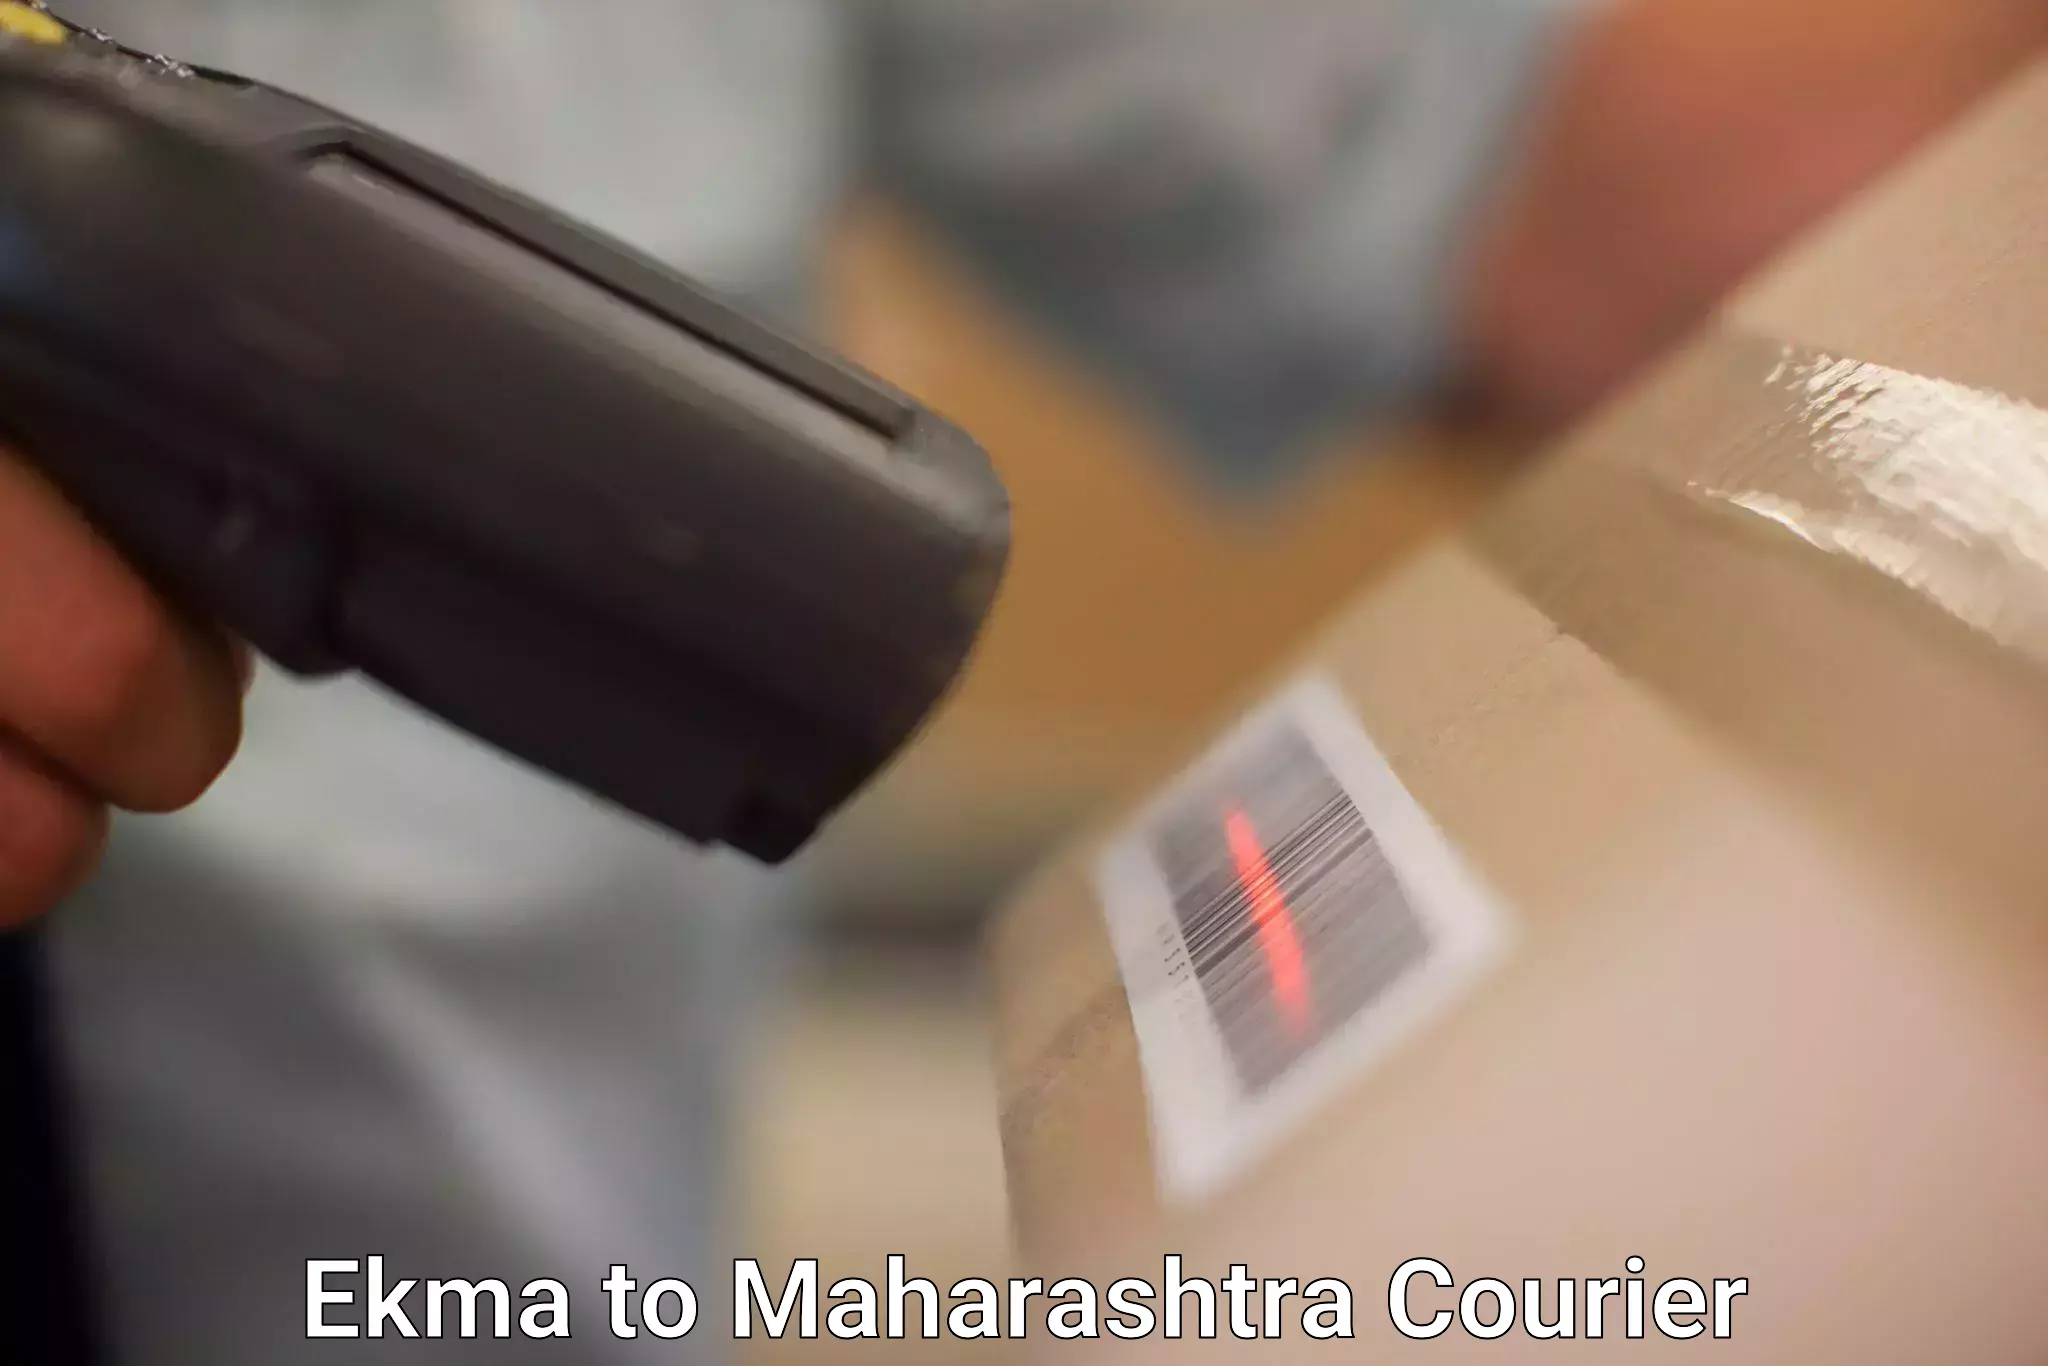 Modern courier technology Ekma to Ballarpur